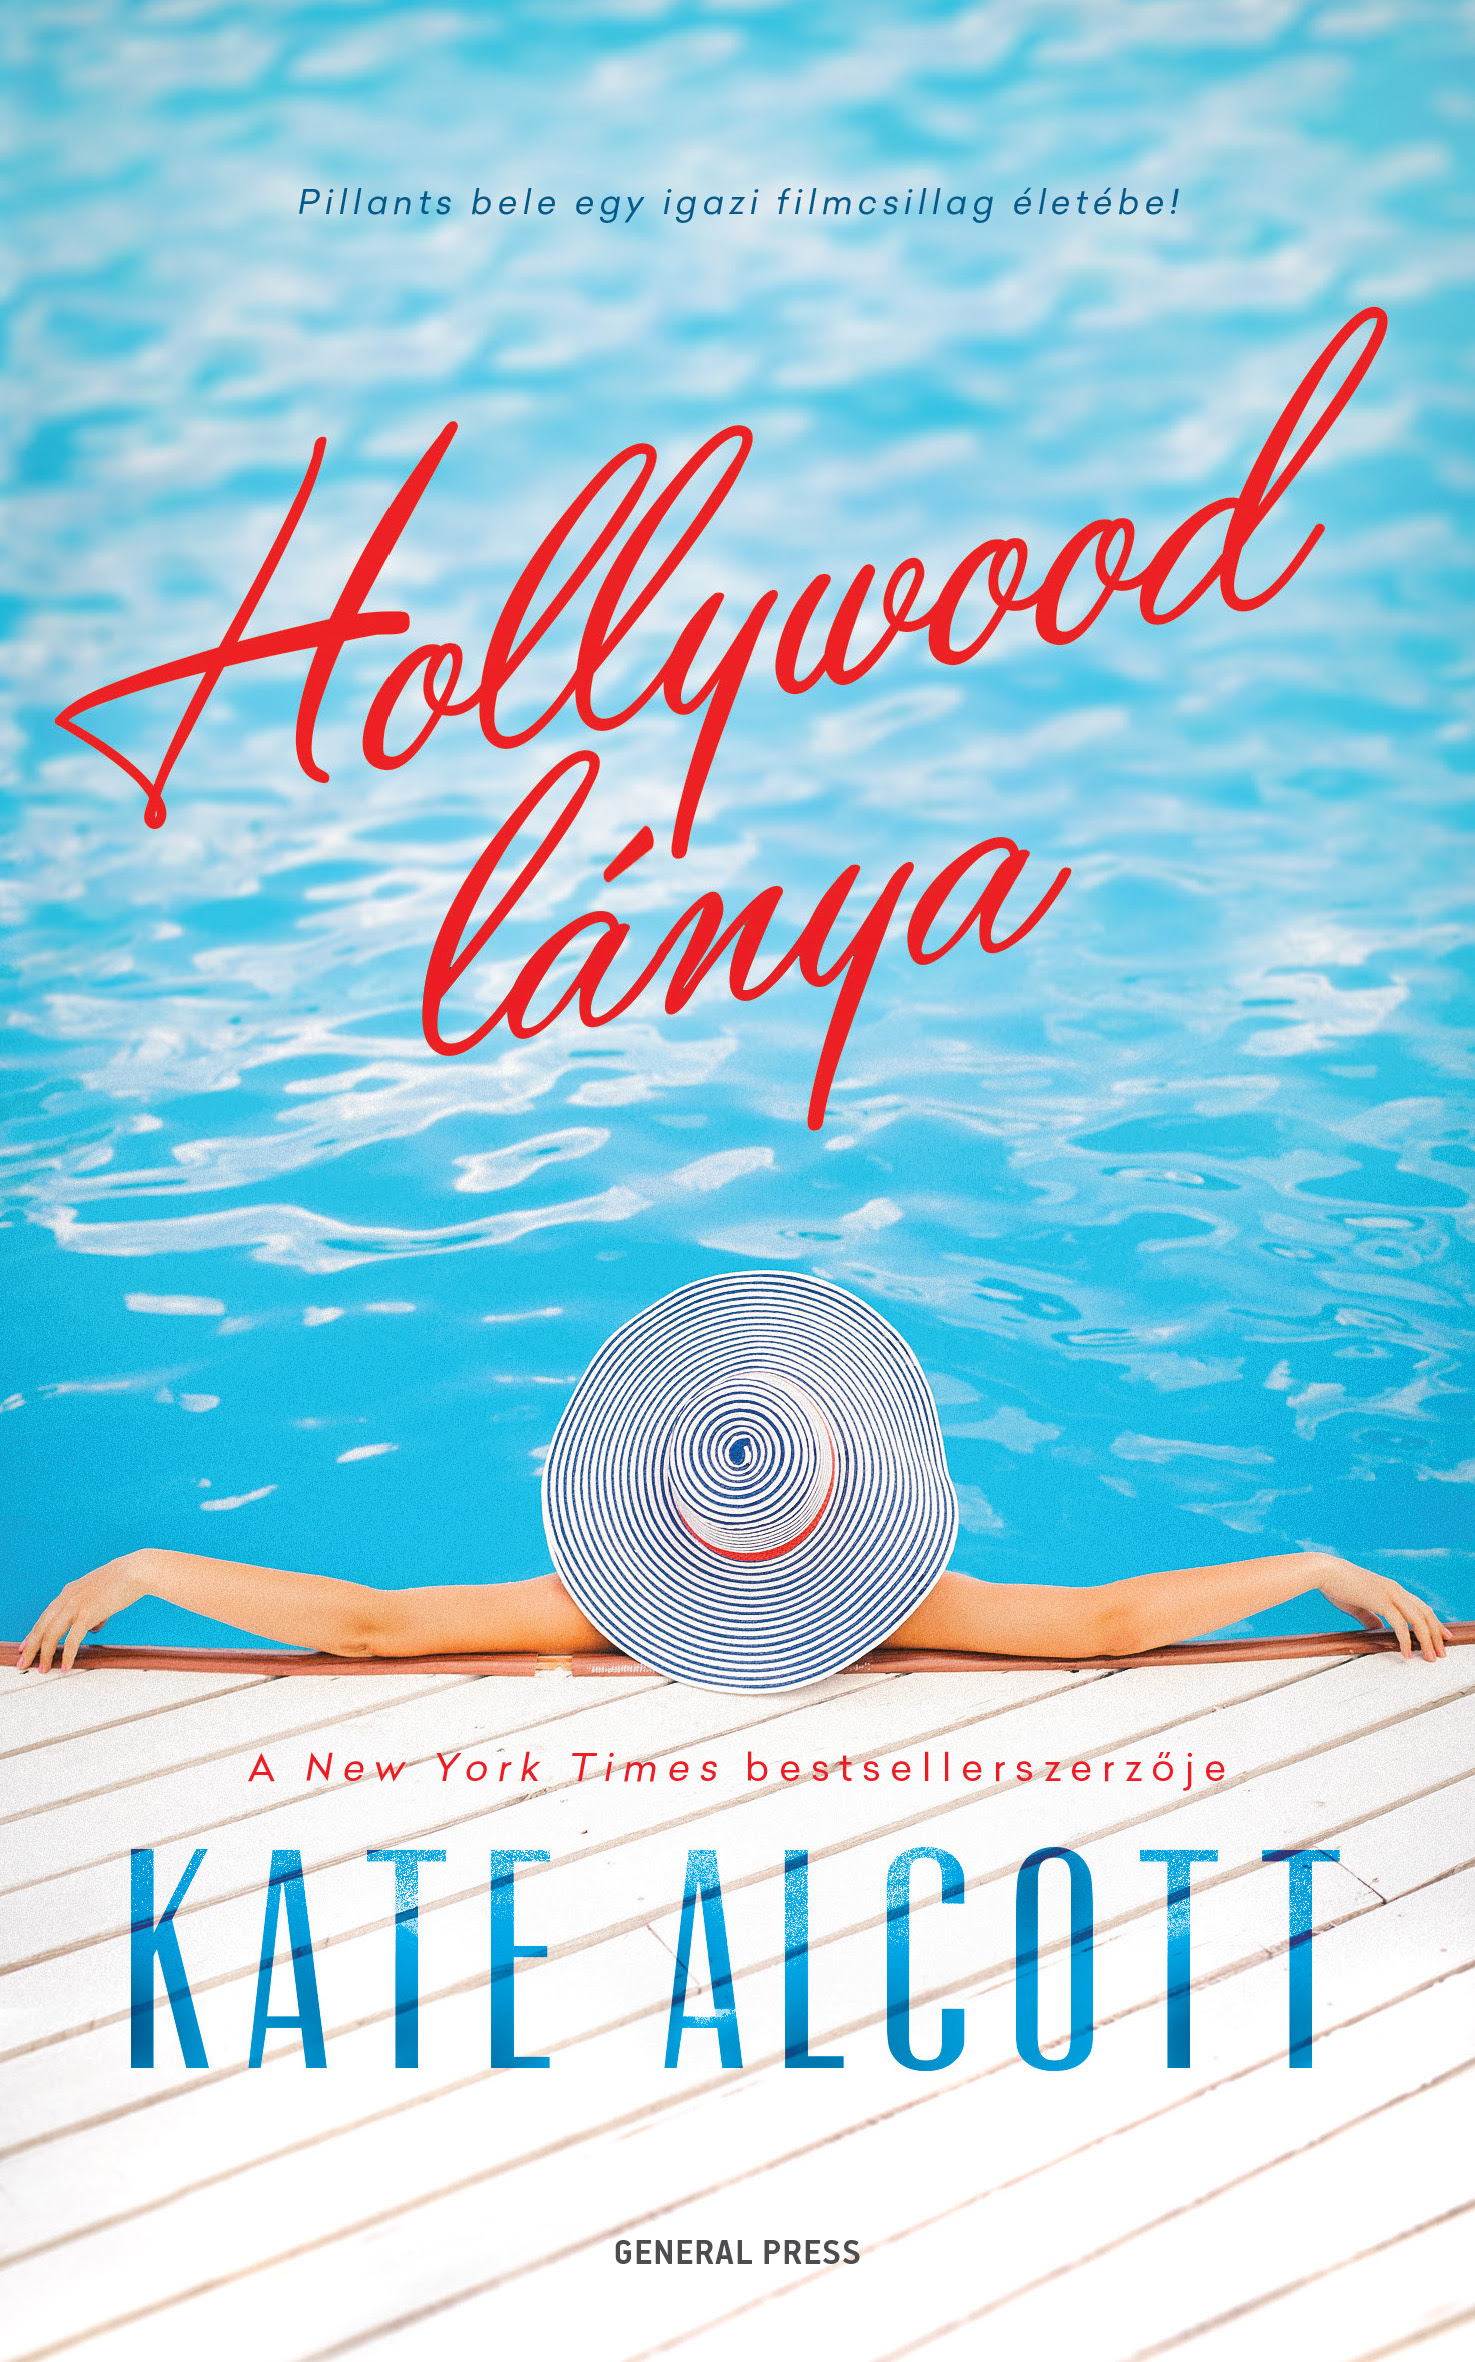 Kate Alcott: Hollywood lánya